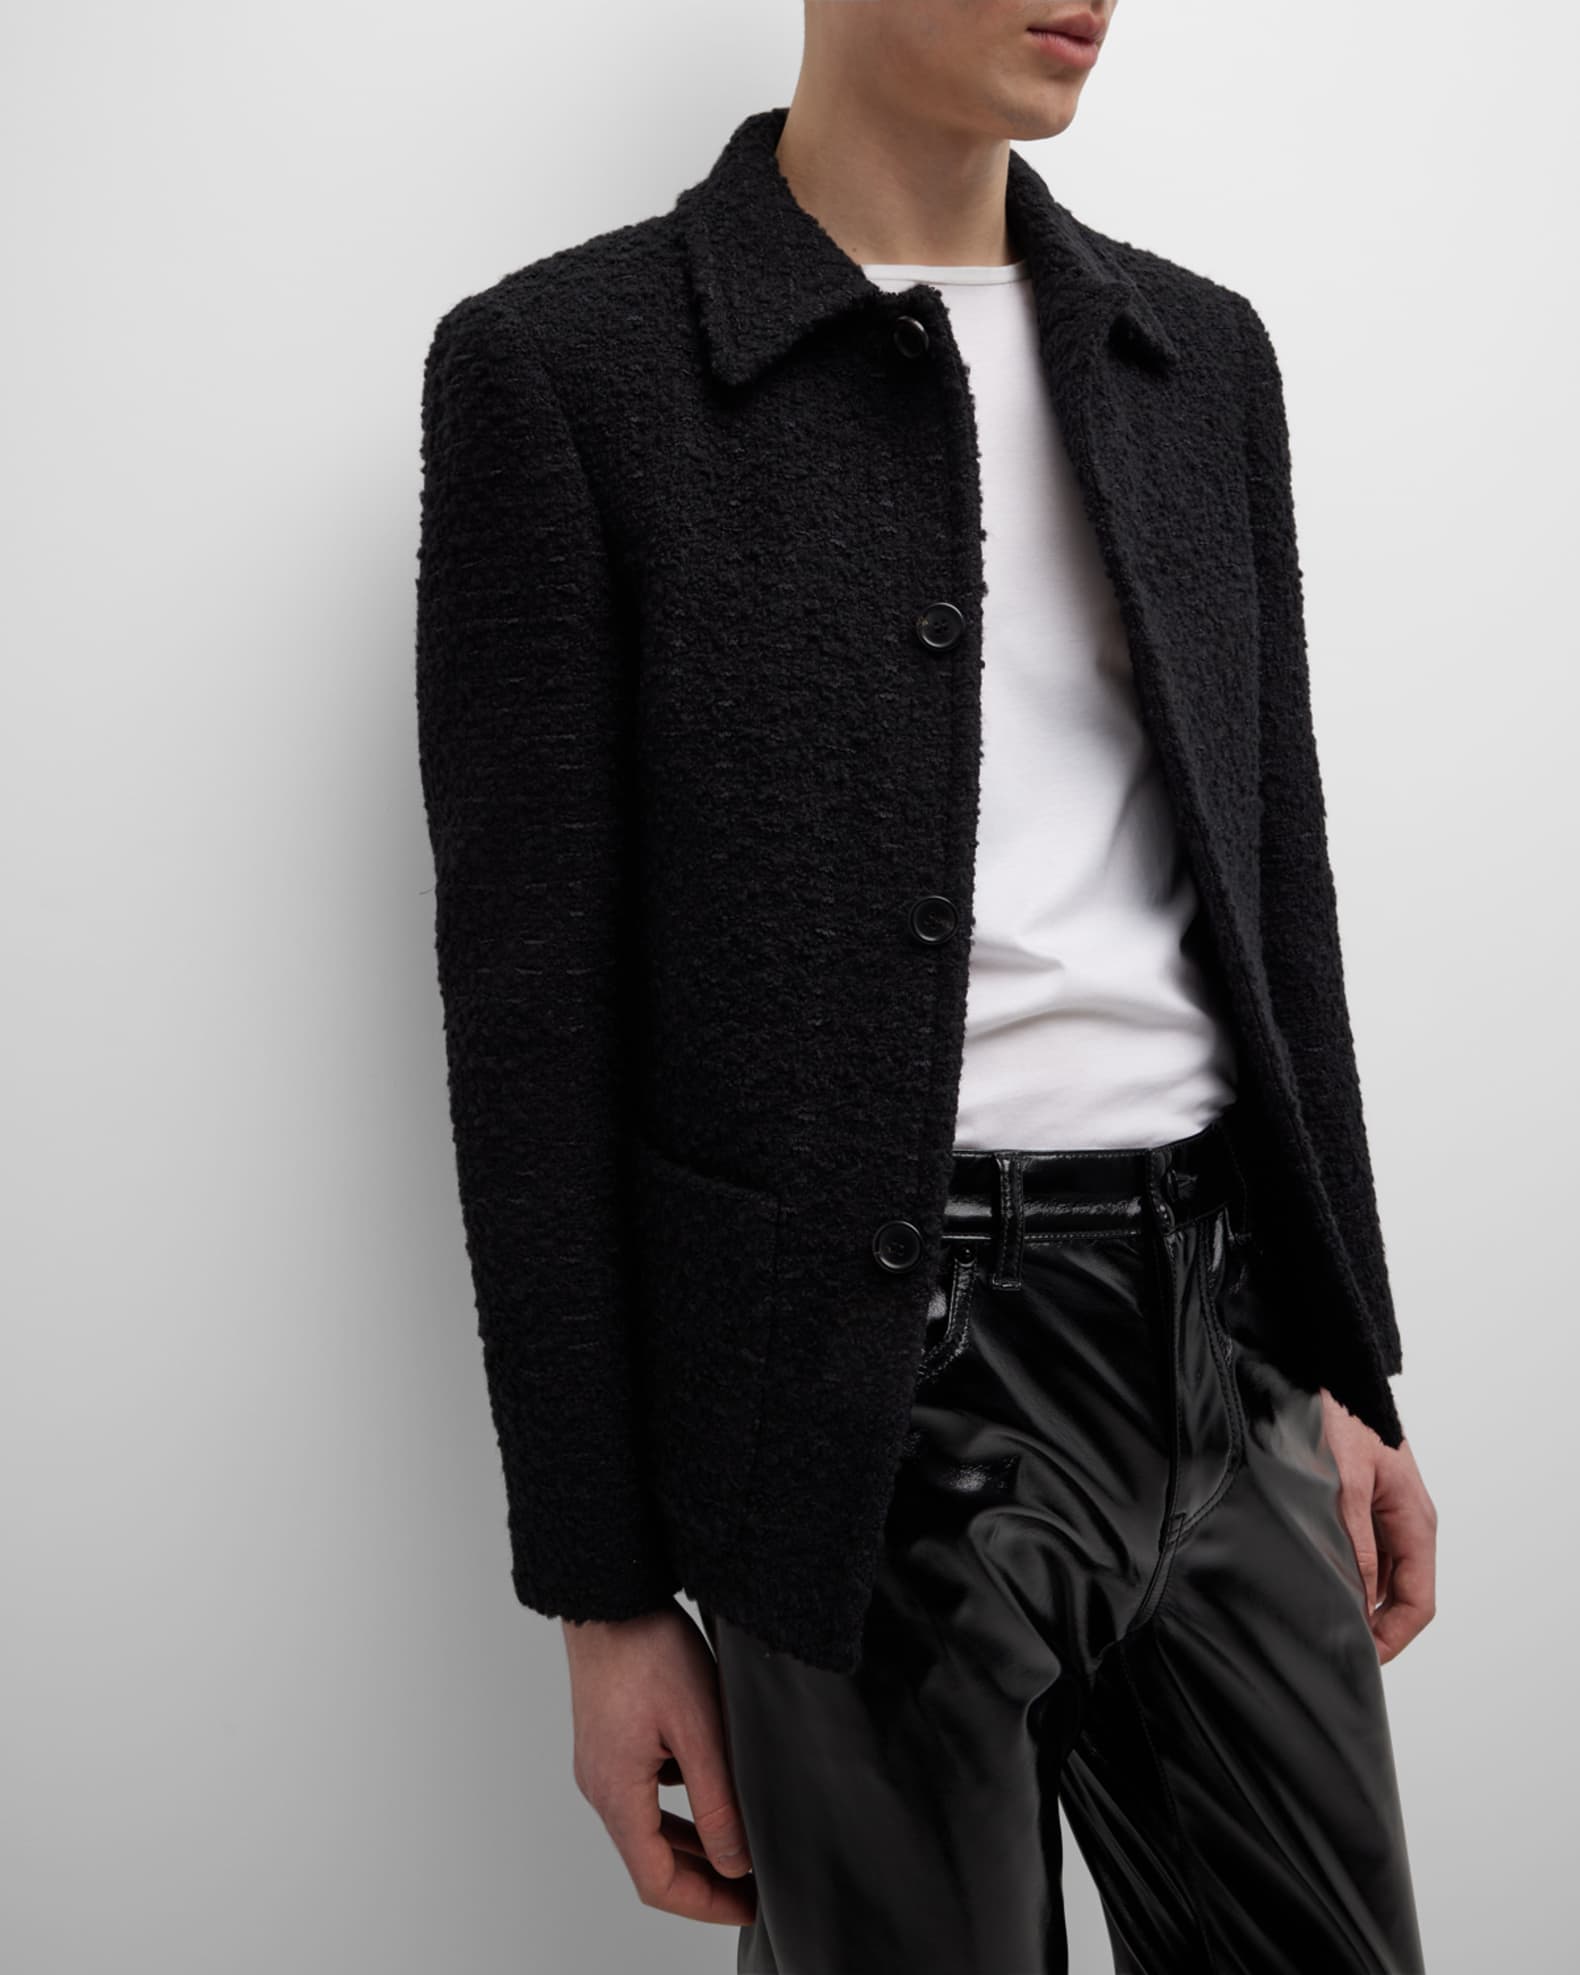 Saint Laurent Men's Solid Tweed Jacket | Neiman Marcus